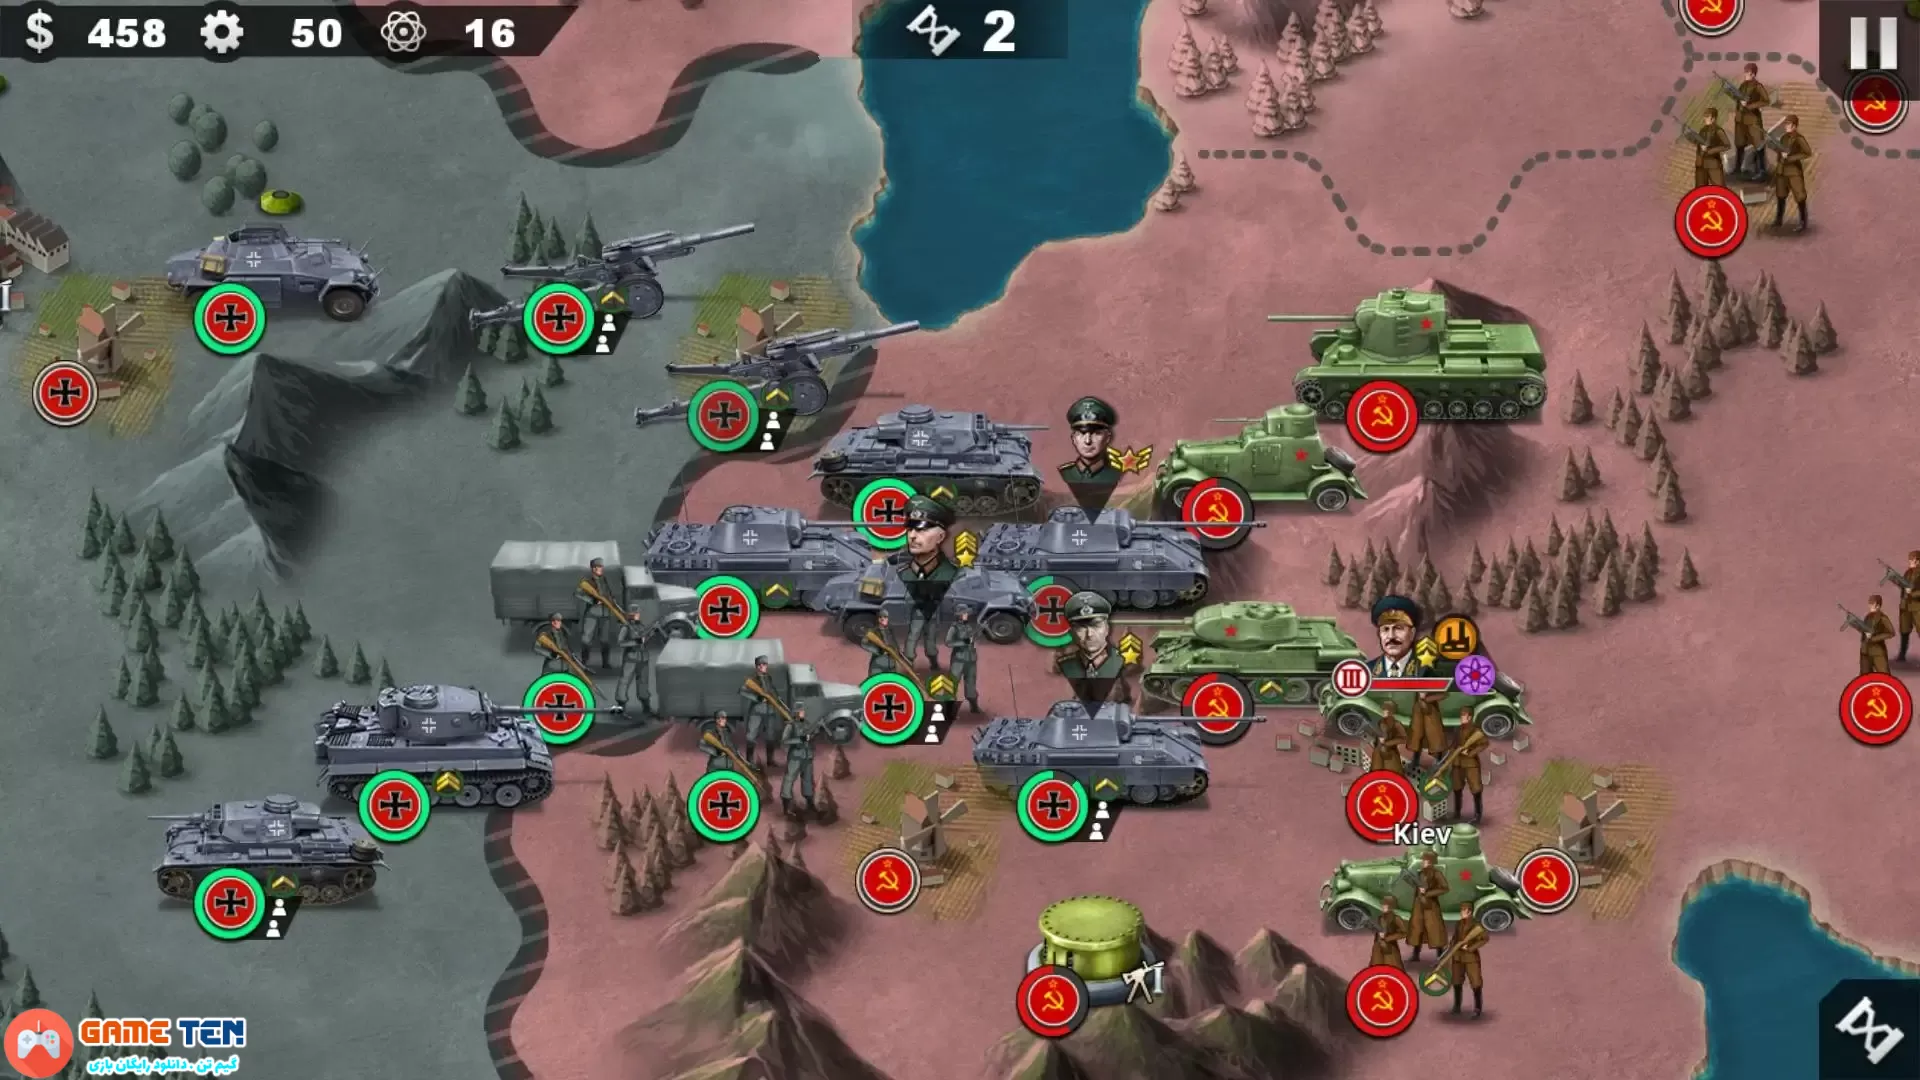 دانلود مود بازی World Conqueror 4-WW2 Strategy v1.10.4 فاتح جهان برای اندروید